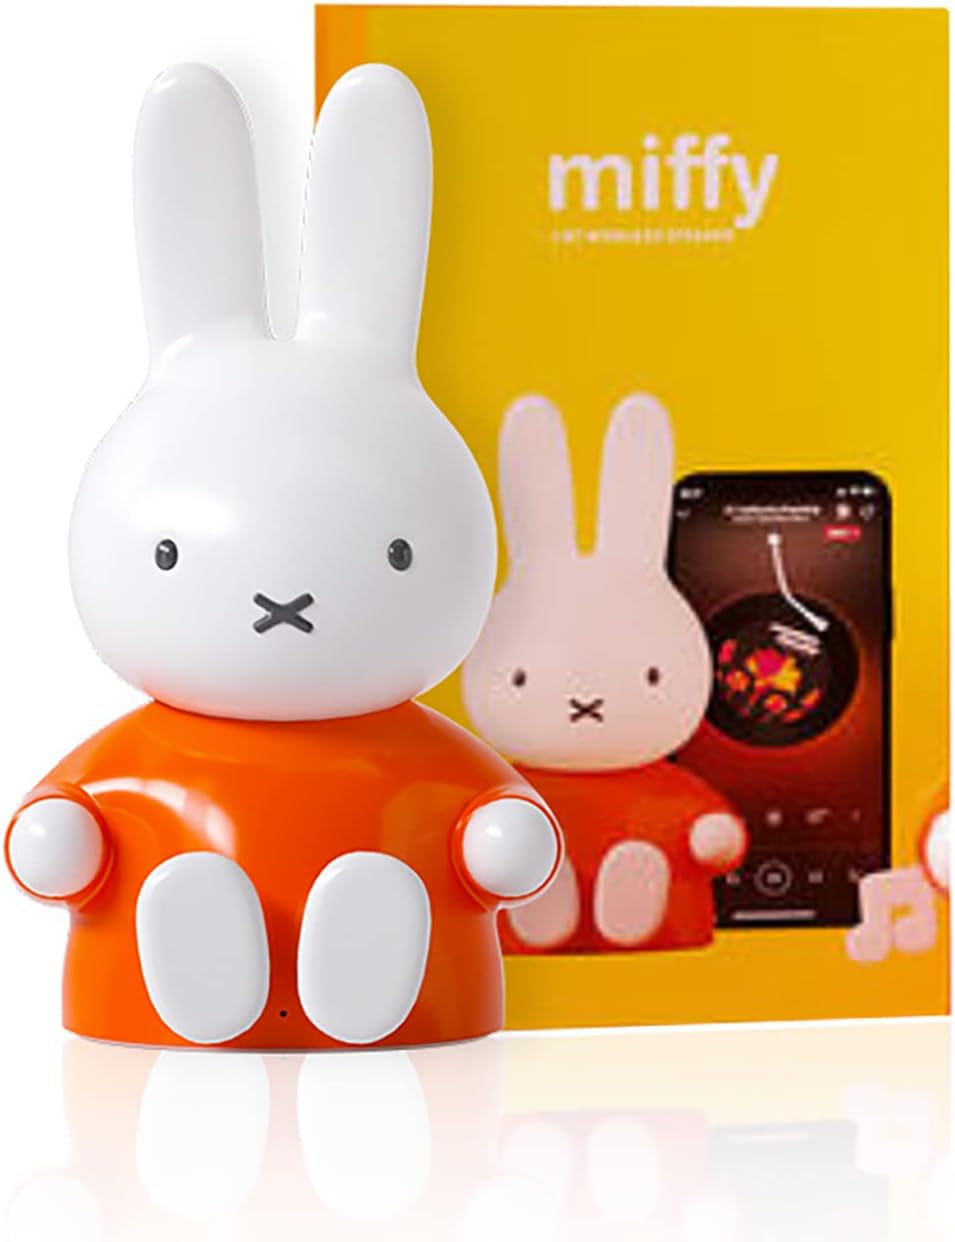 Miffy Bluetooth Figurine Speaker, Mini Bluetooth Speaker (Orange)